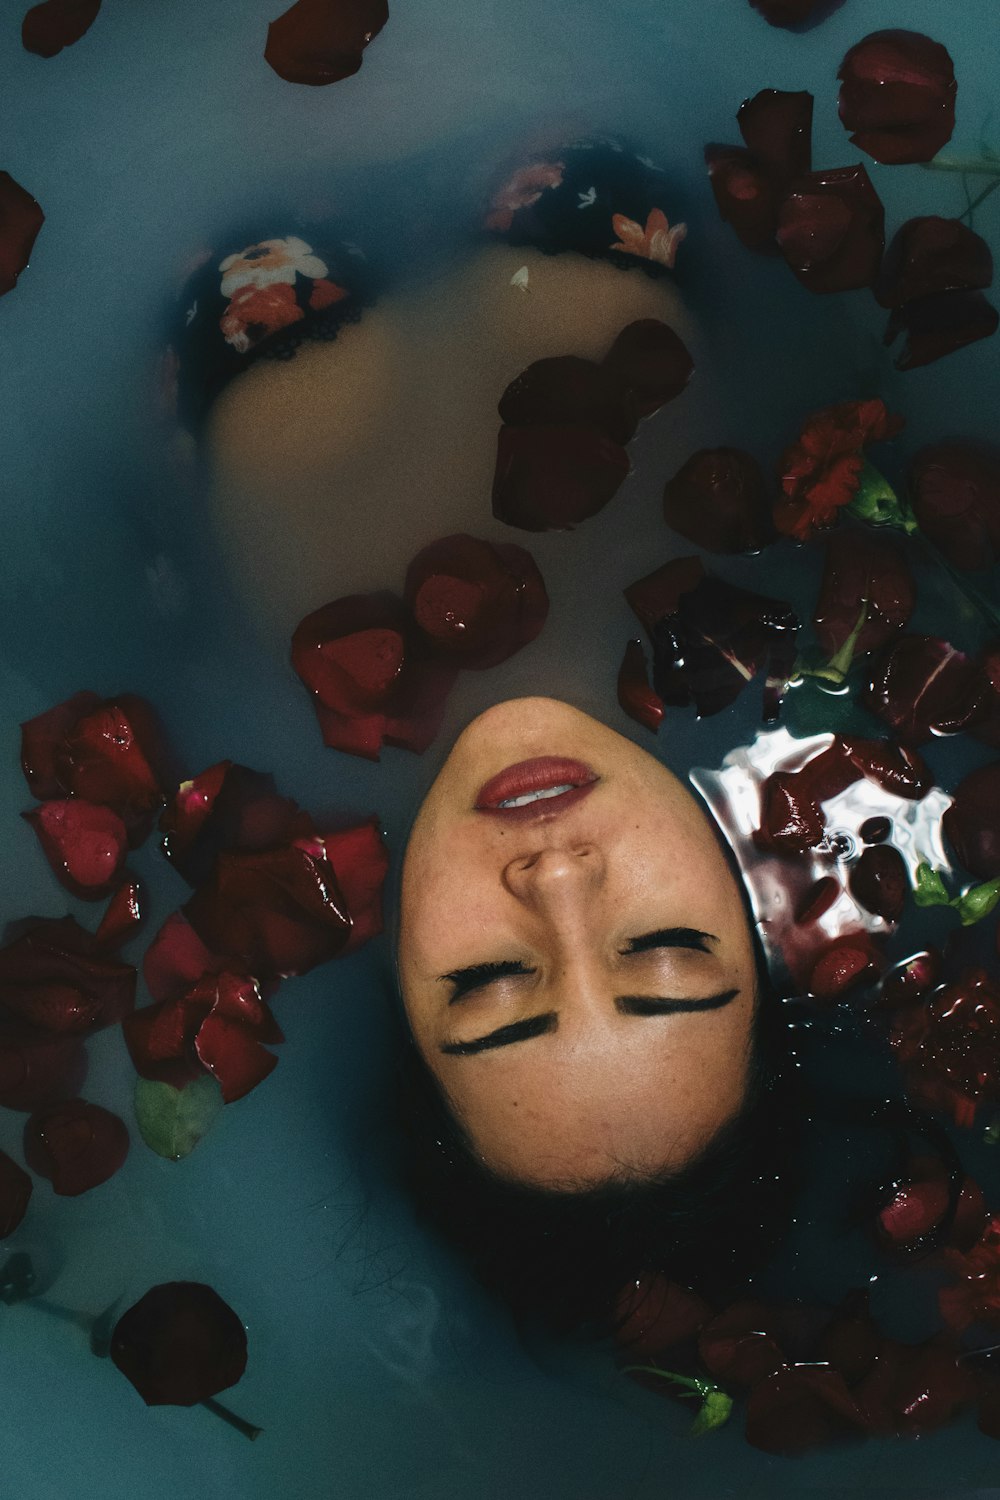 빨간 꽃잎이 가득한 물에 몸을 담근 여자가 물 위로 얼굴을 내밀고 있다